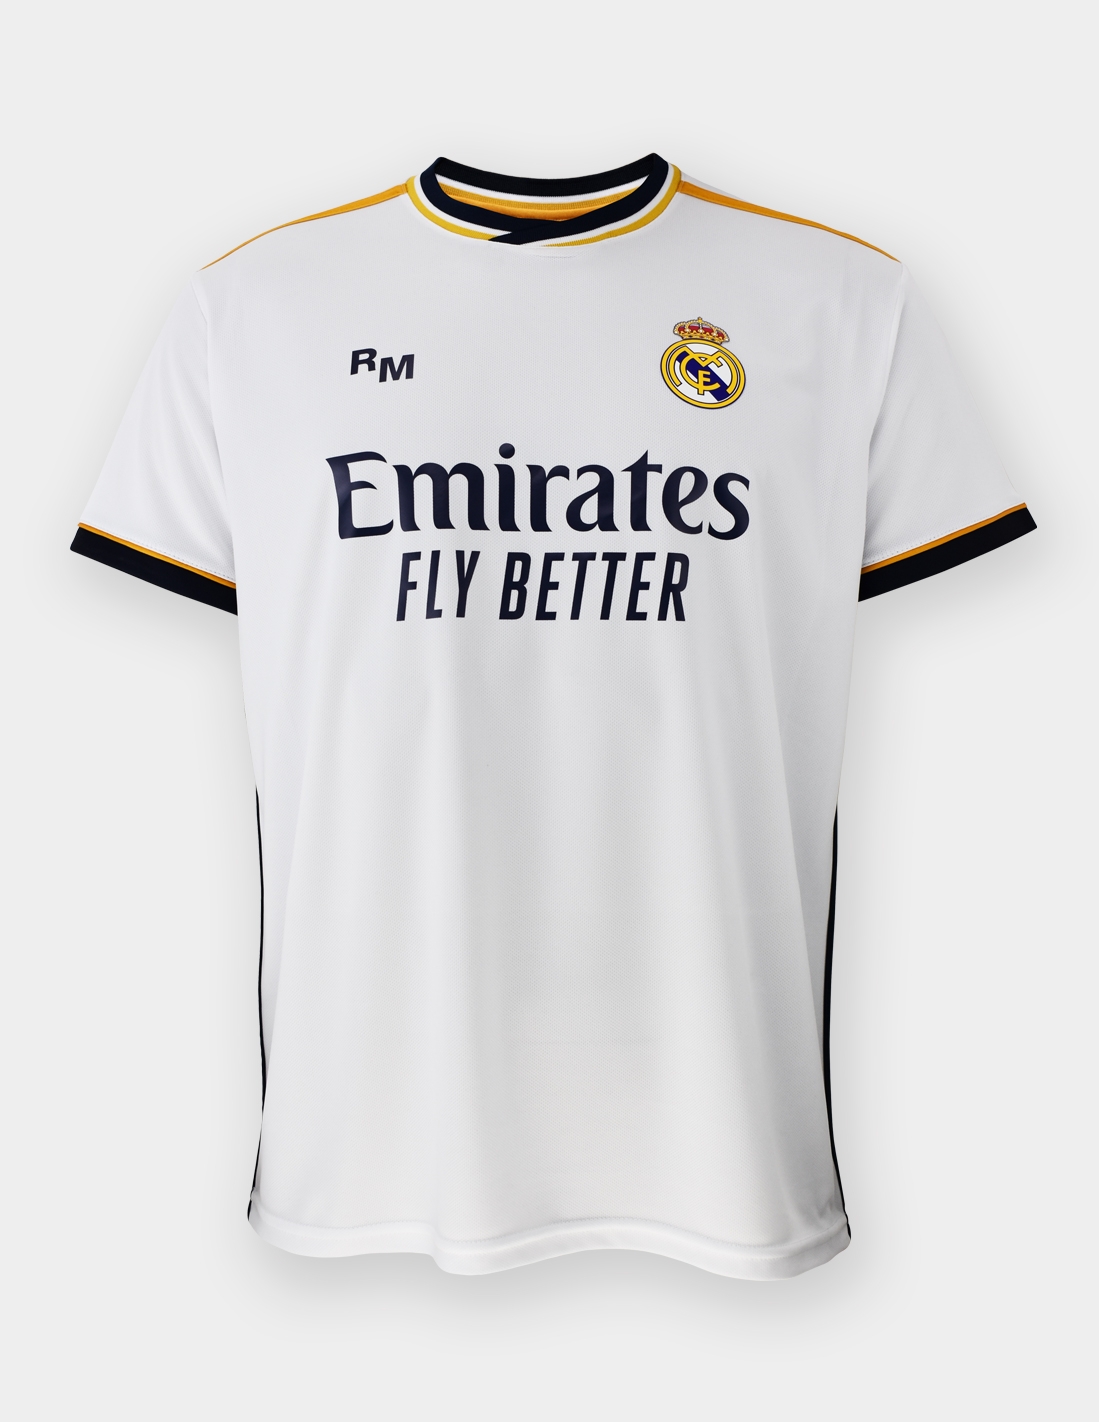 myfanshirt Personalizado Madrid Real Camiseta